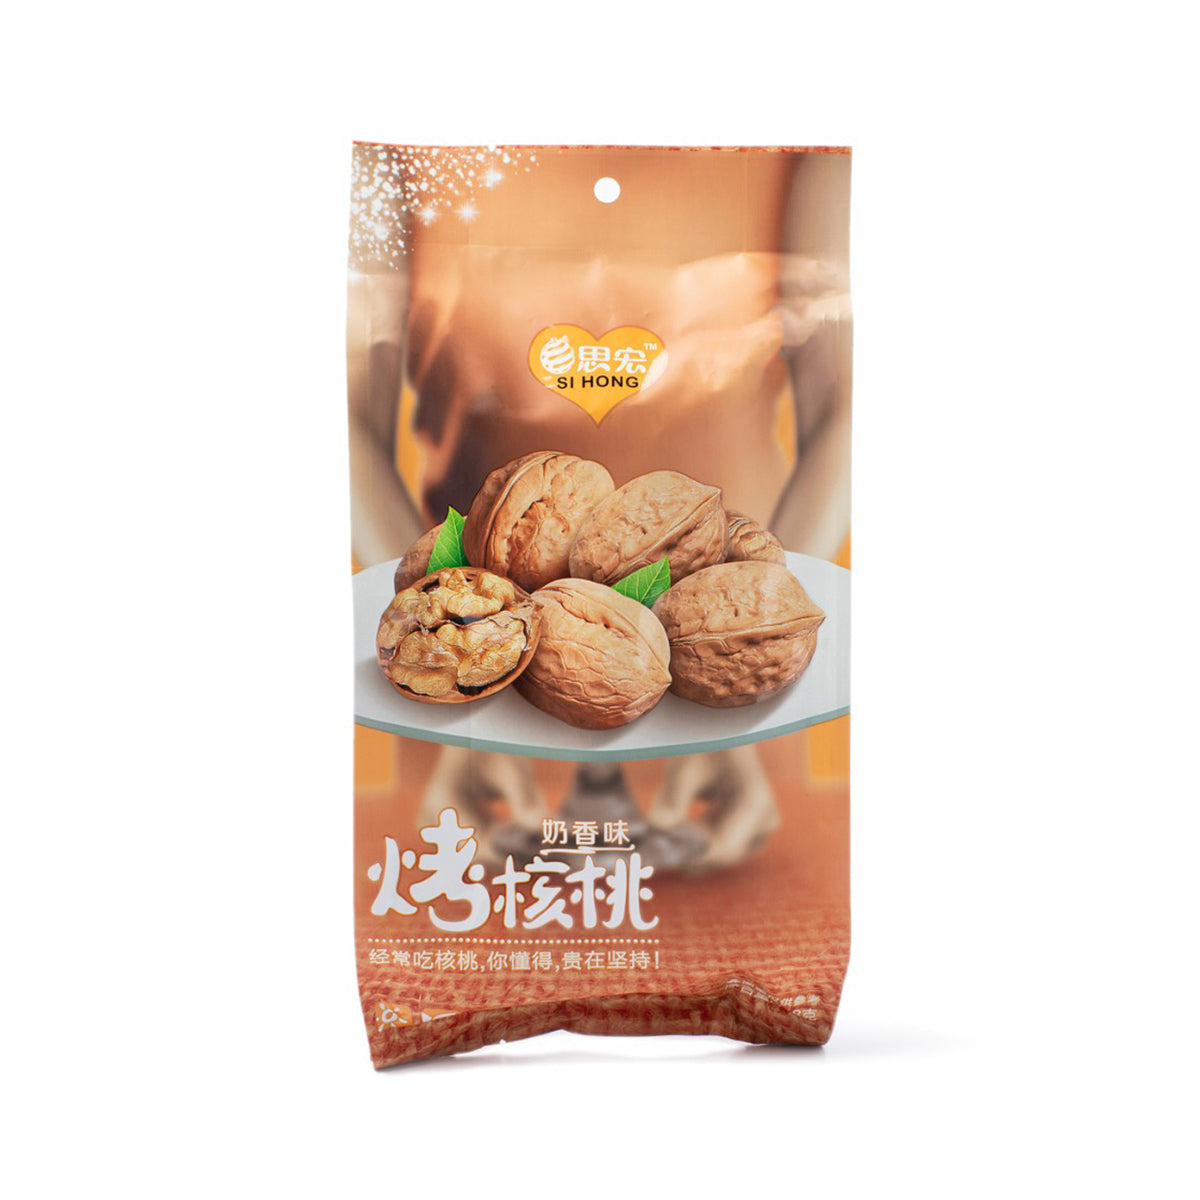 si hong roasted walnuts (milk) - 418g